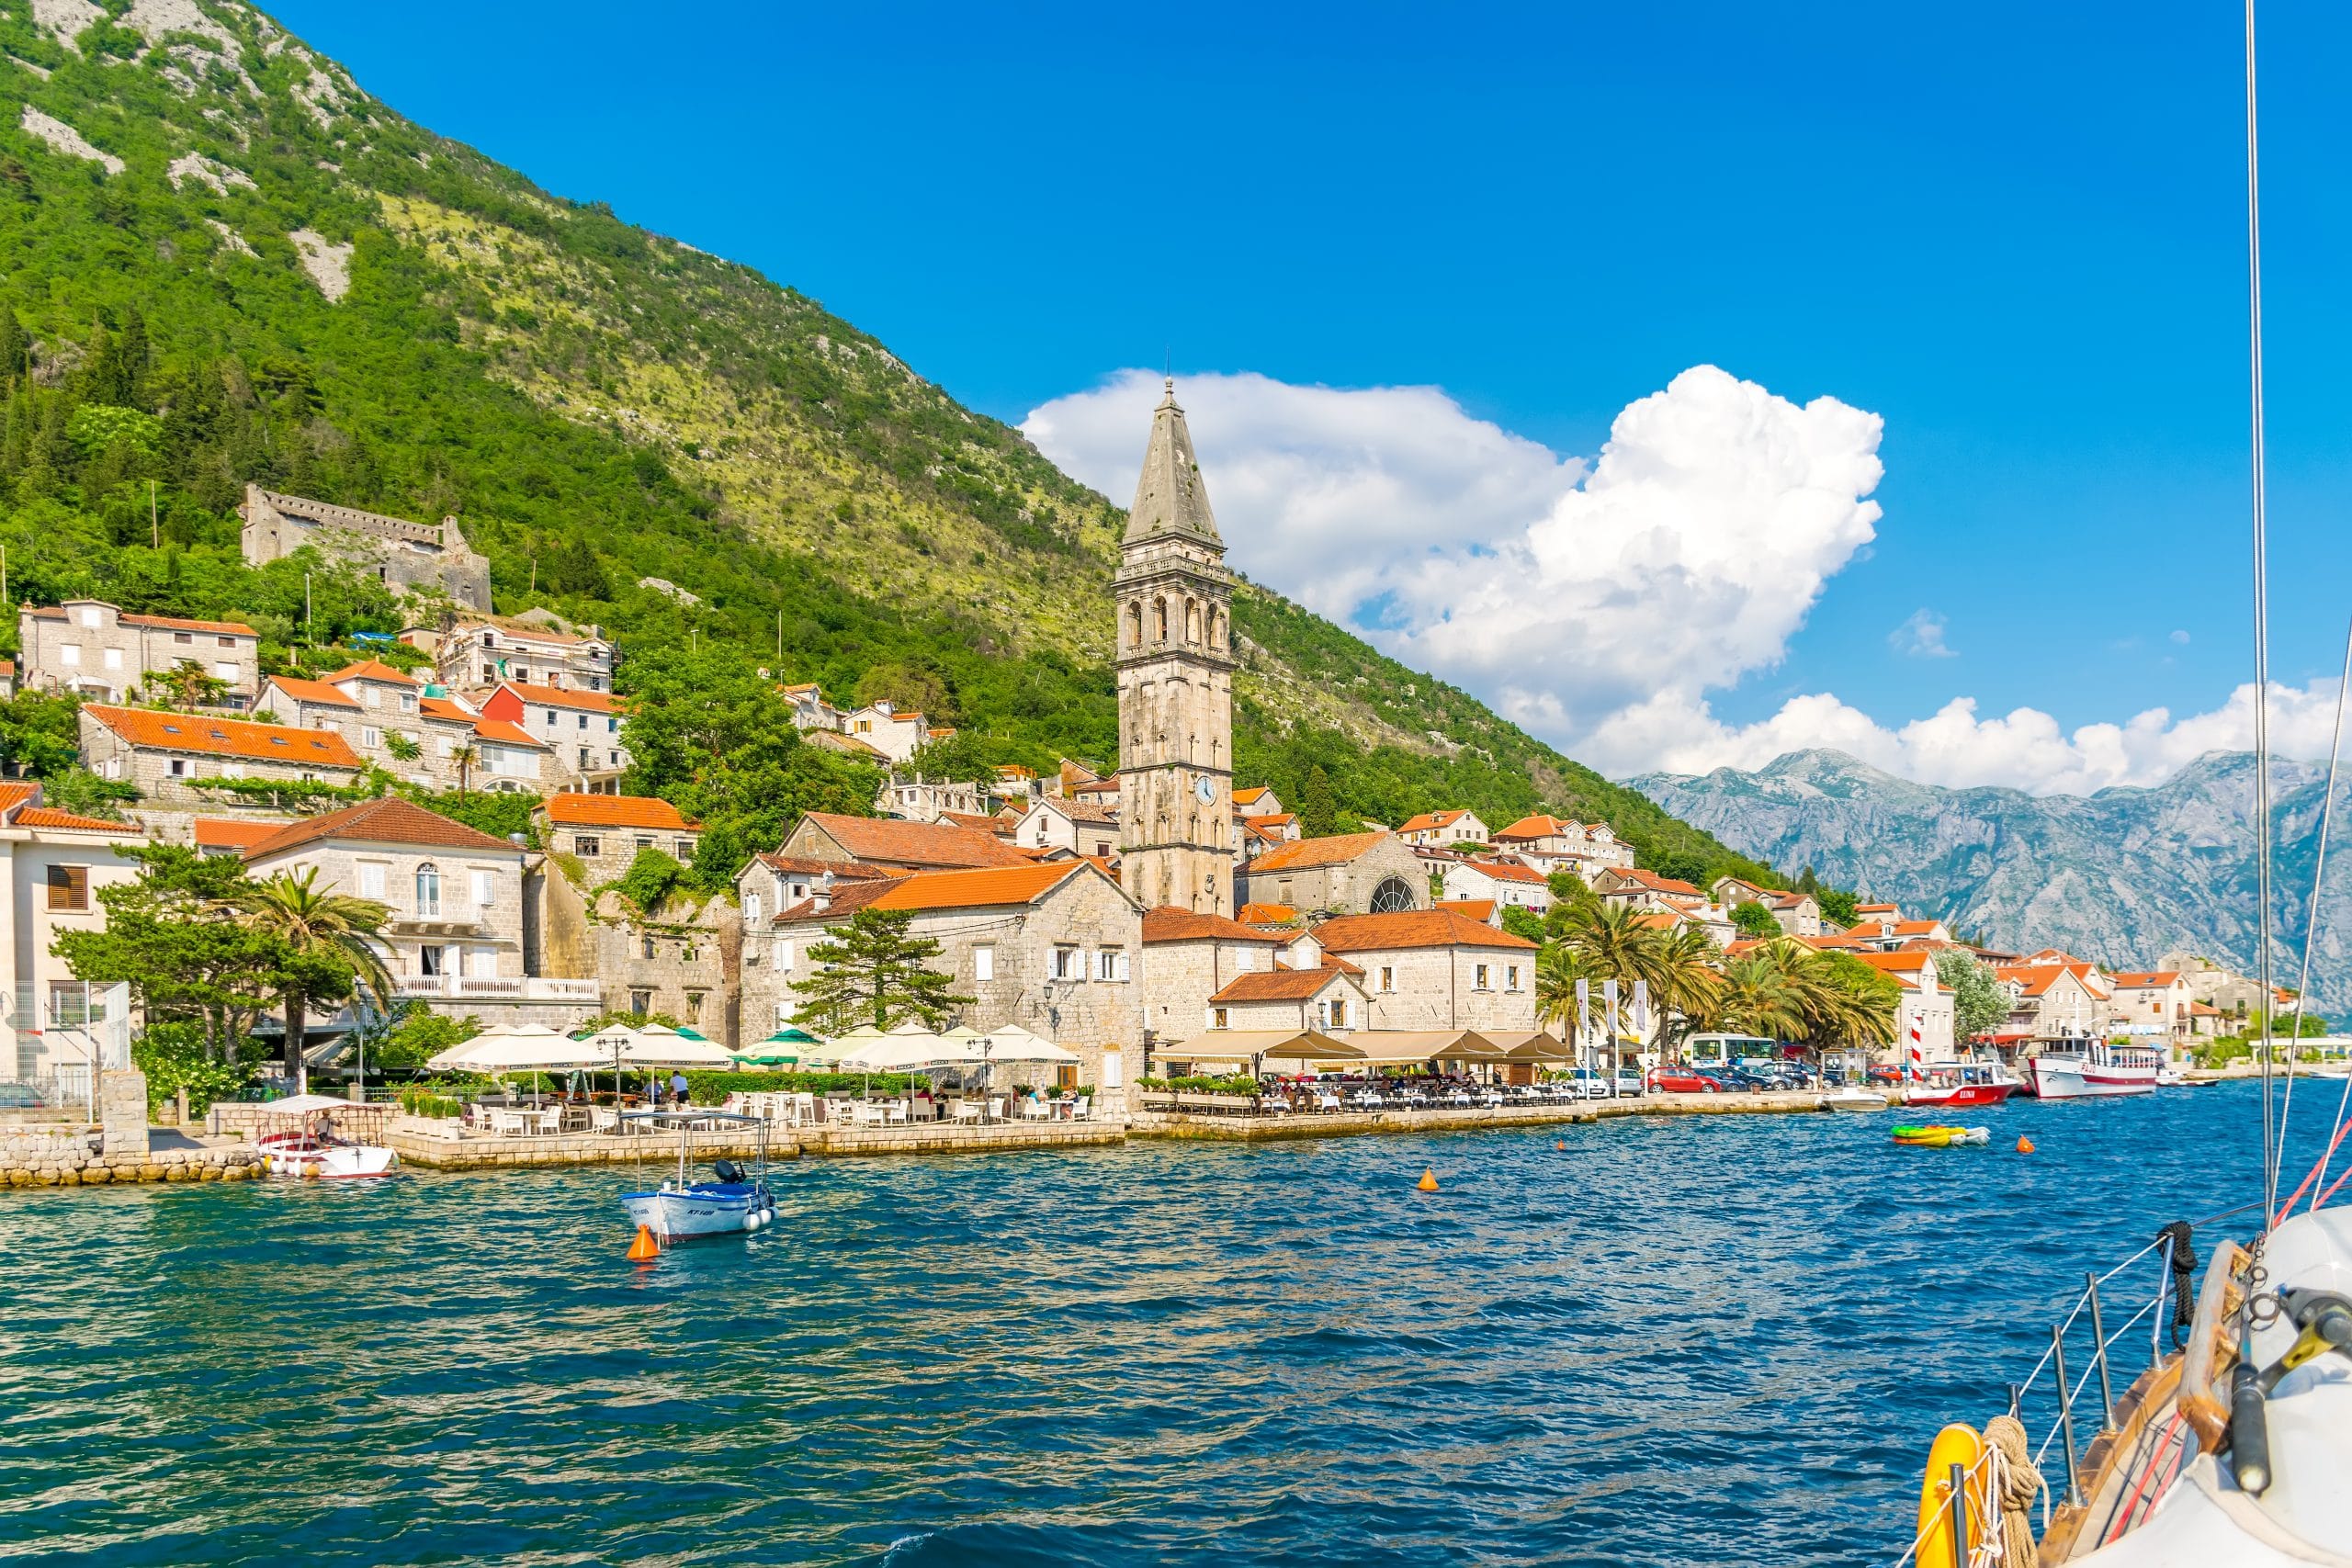 وجهتك الجديدة الجبل الأسود (مونتينغرو) وبالأخص شاطئ رويال بلو مونتينغرو